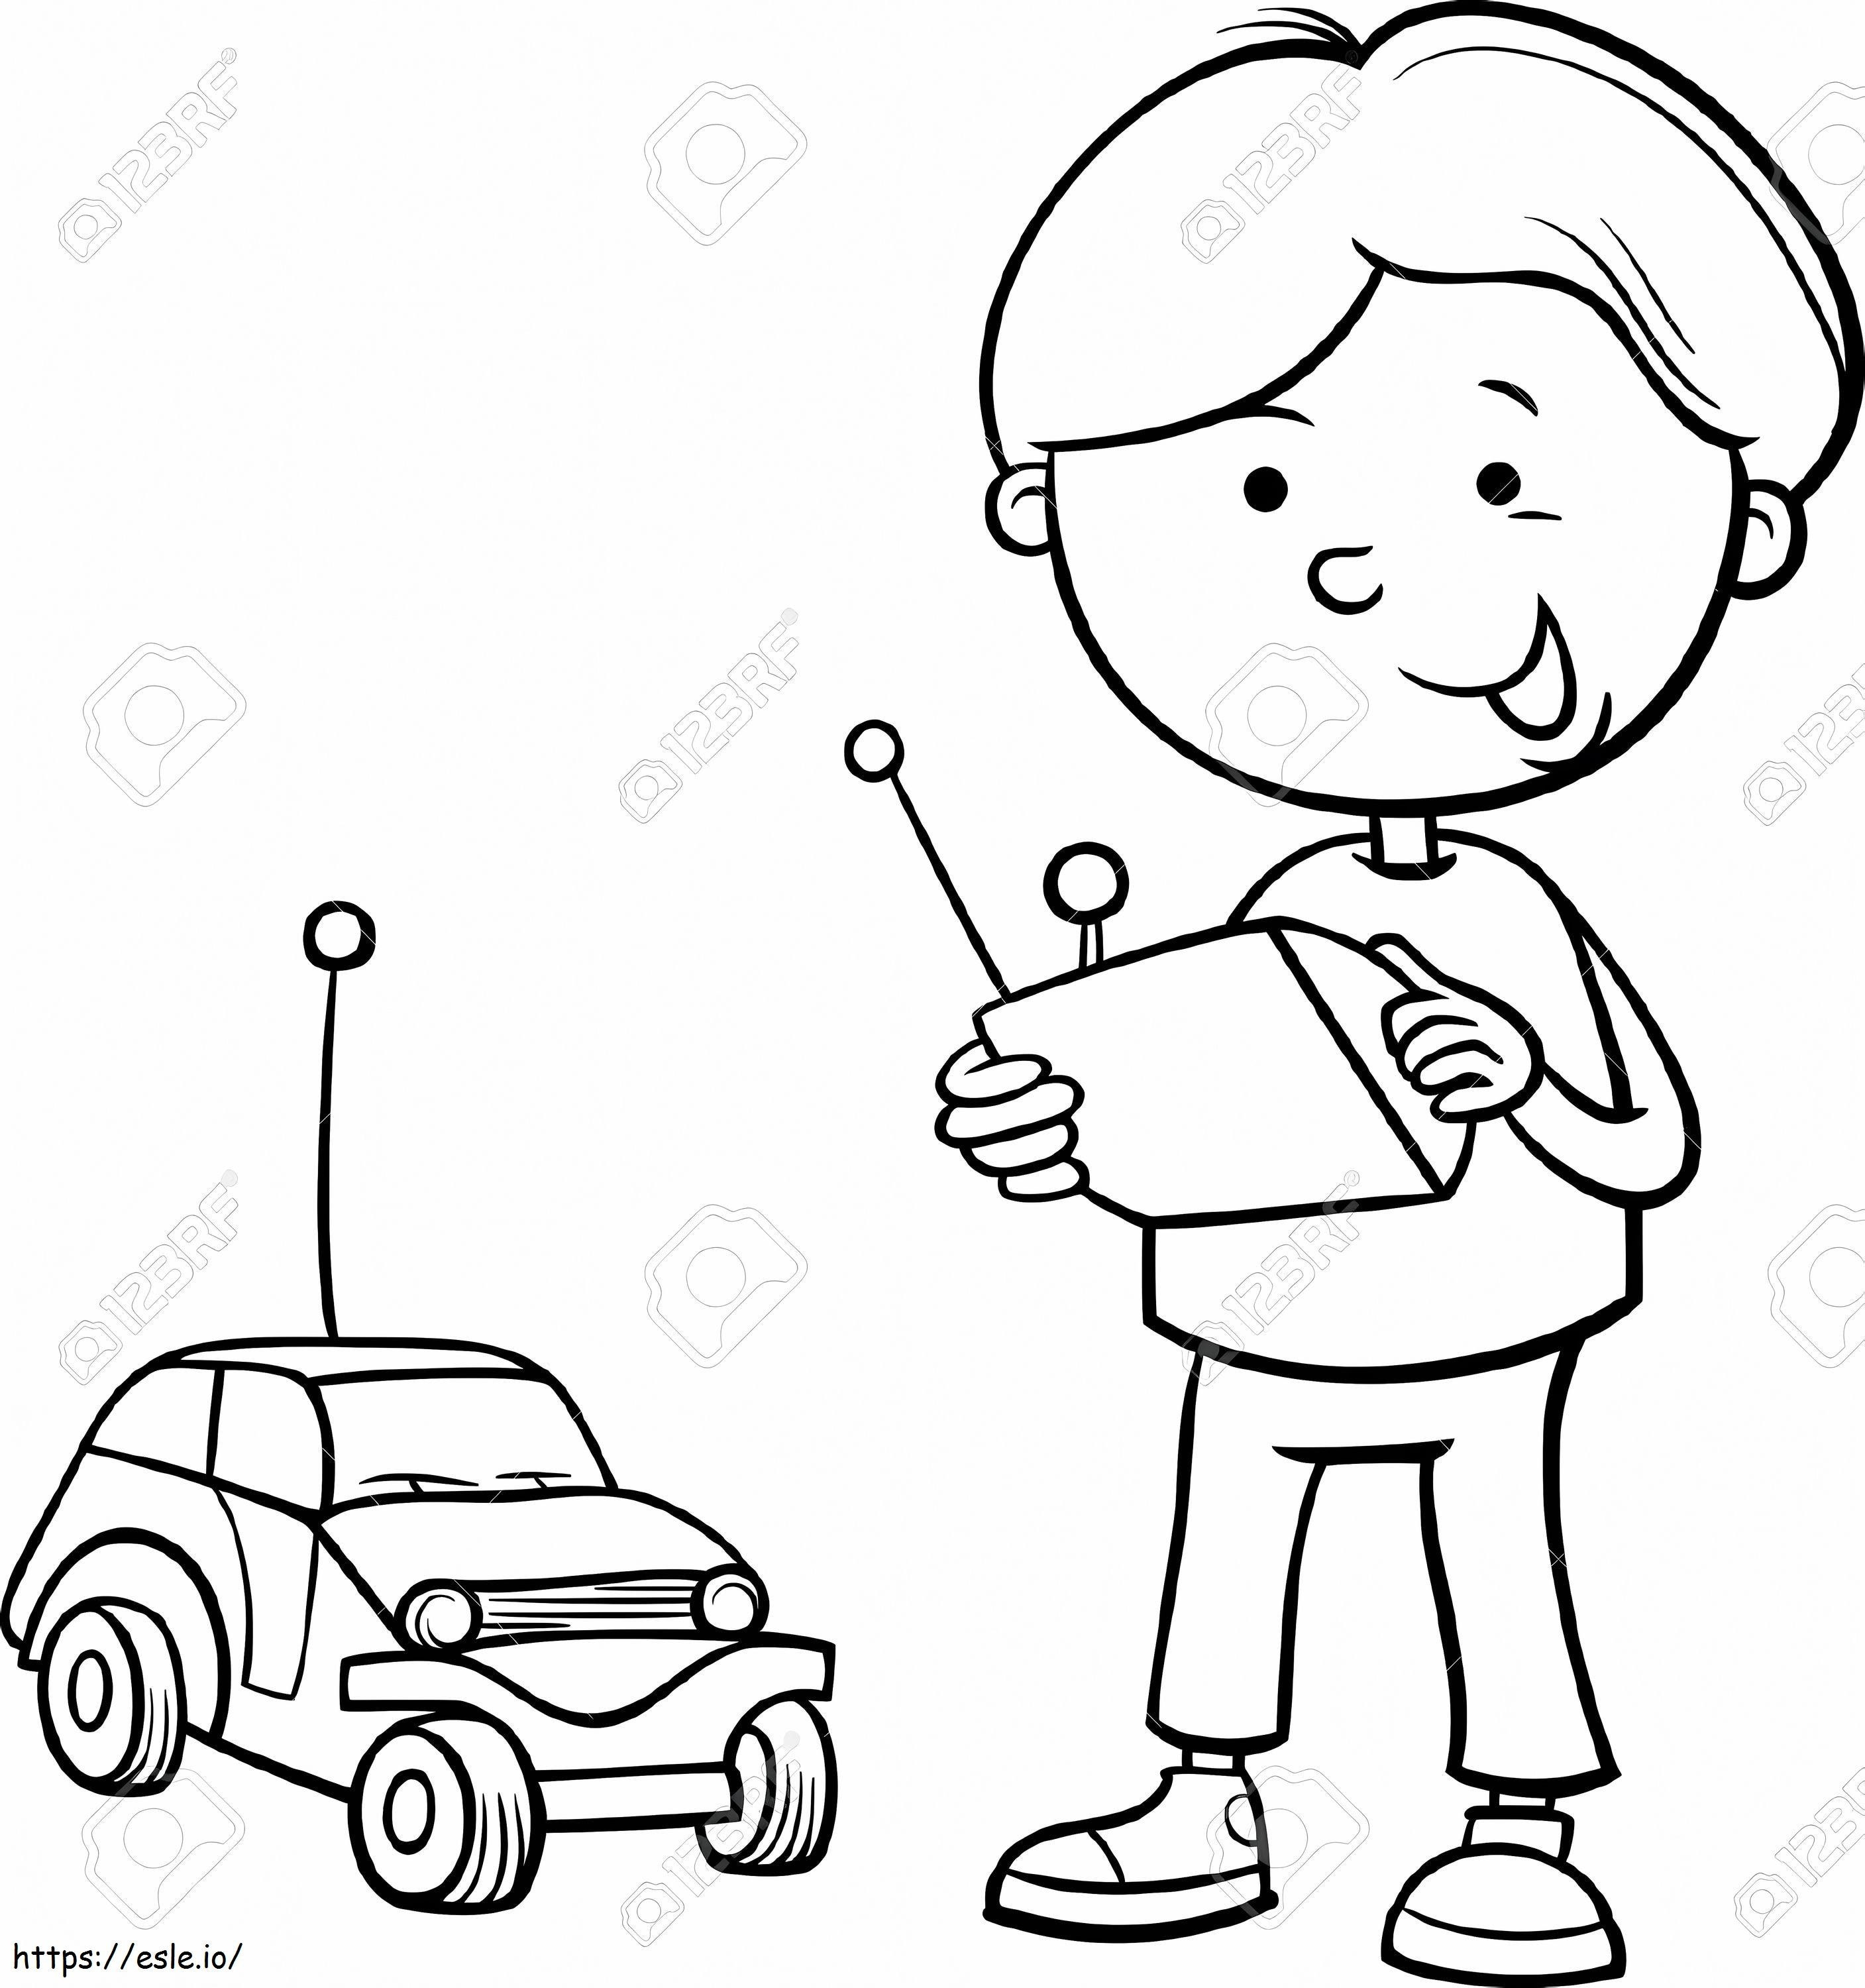  Rc Toys 2 E Car Toy Clipart Preto e Branco Clipartxtras For Rc Car Information Cartoon Car At para colorir